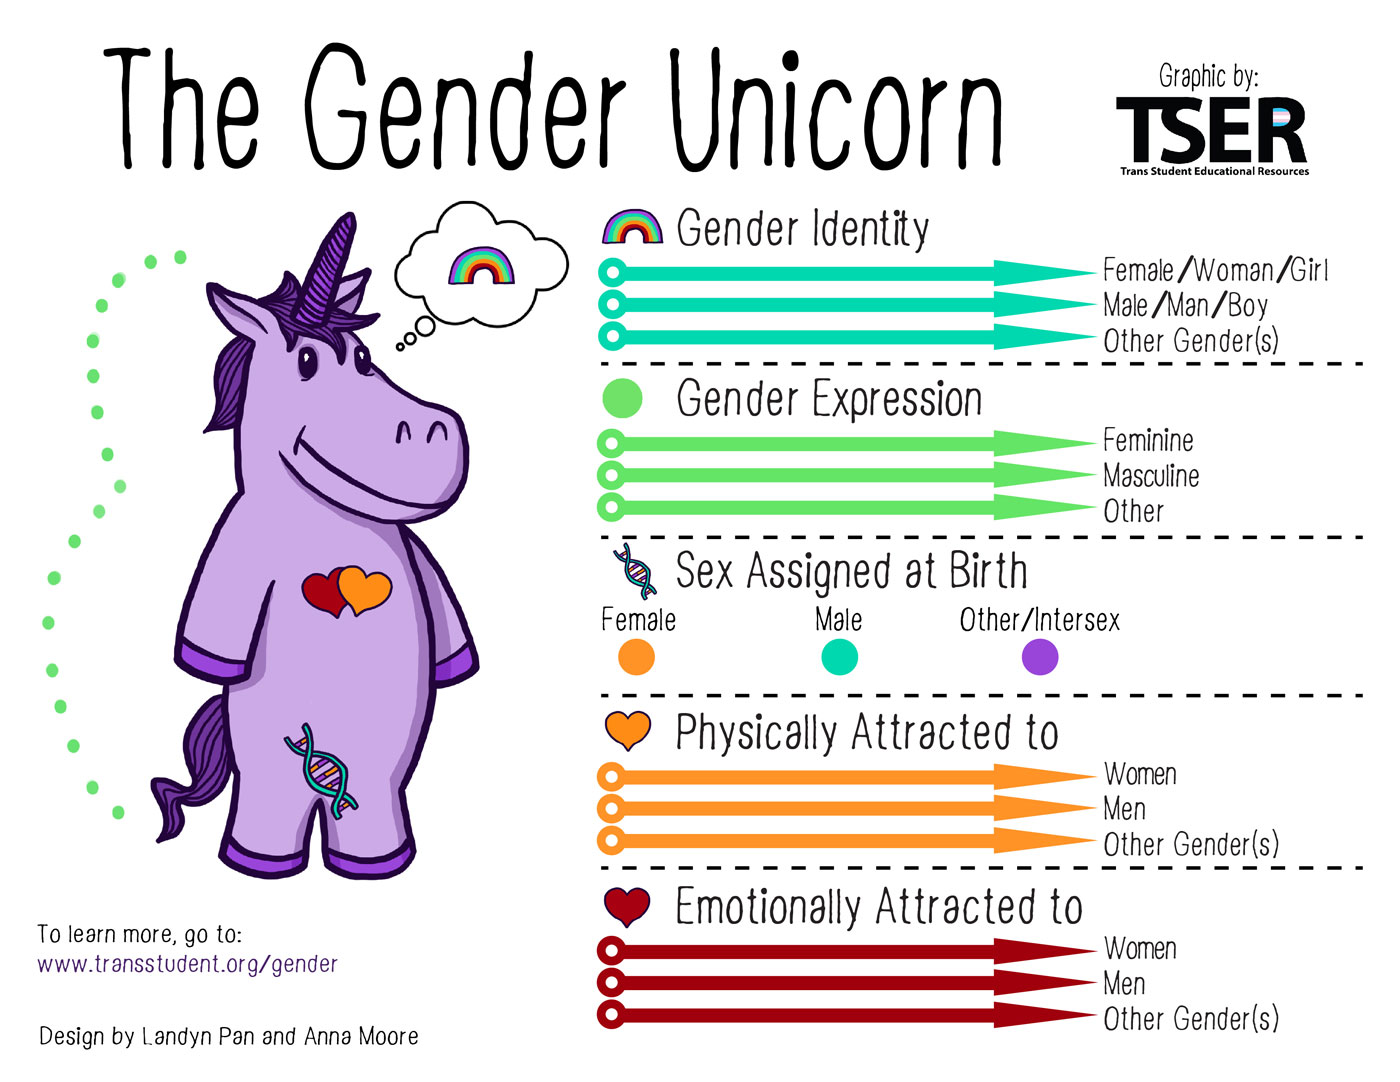 GenderUnicorn.jpg 